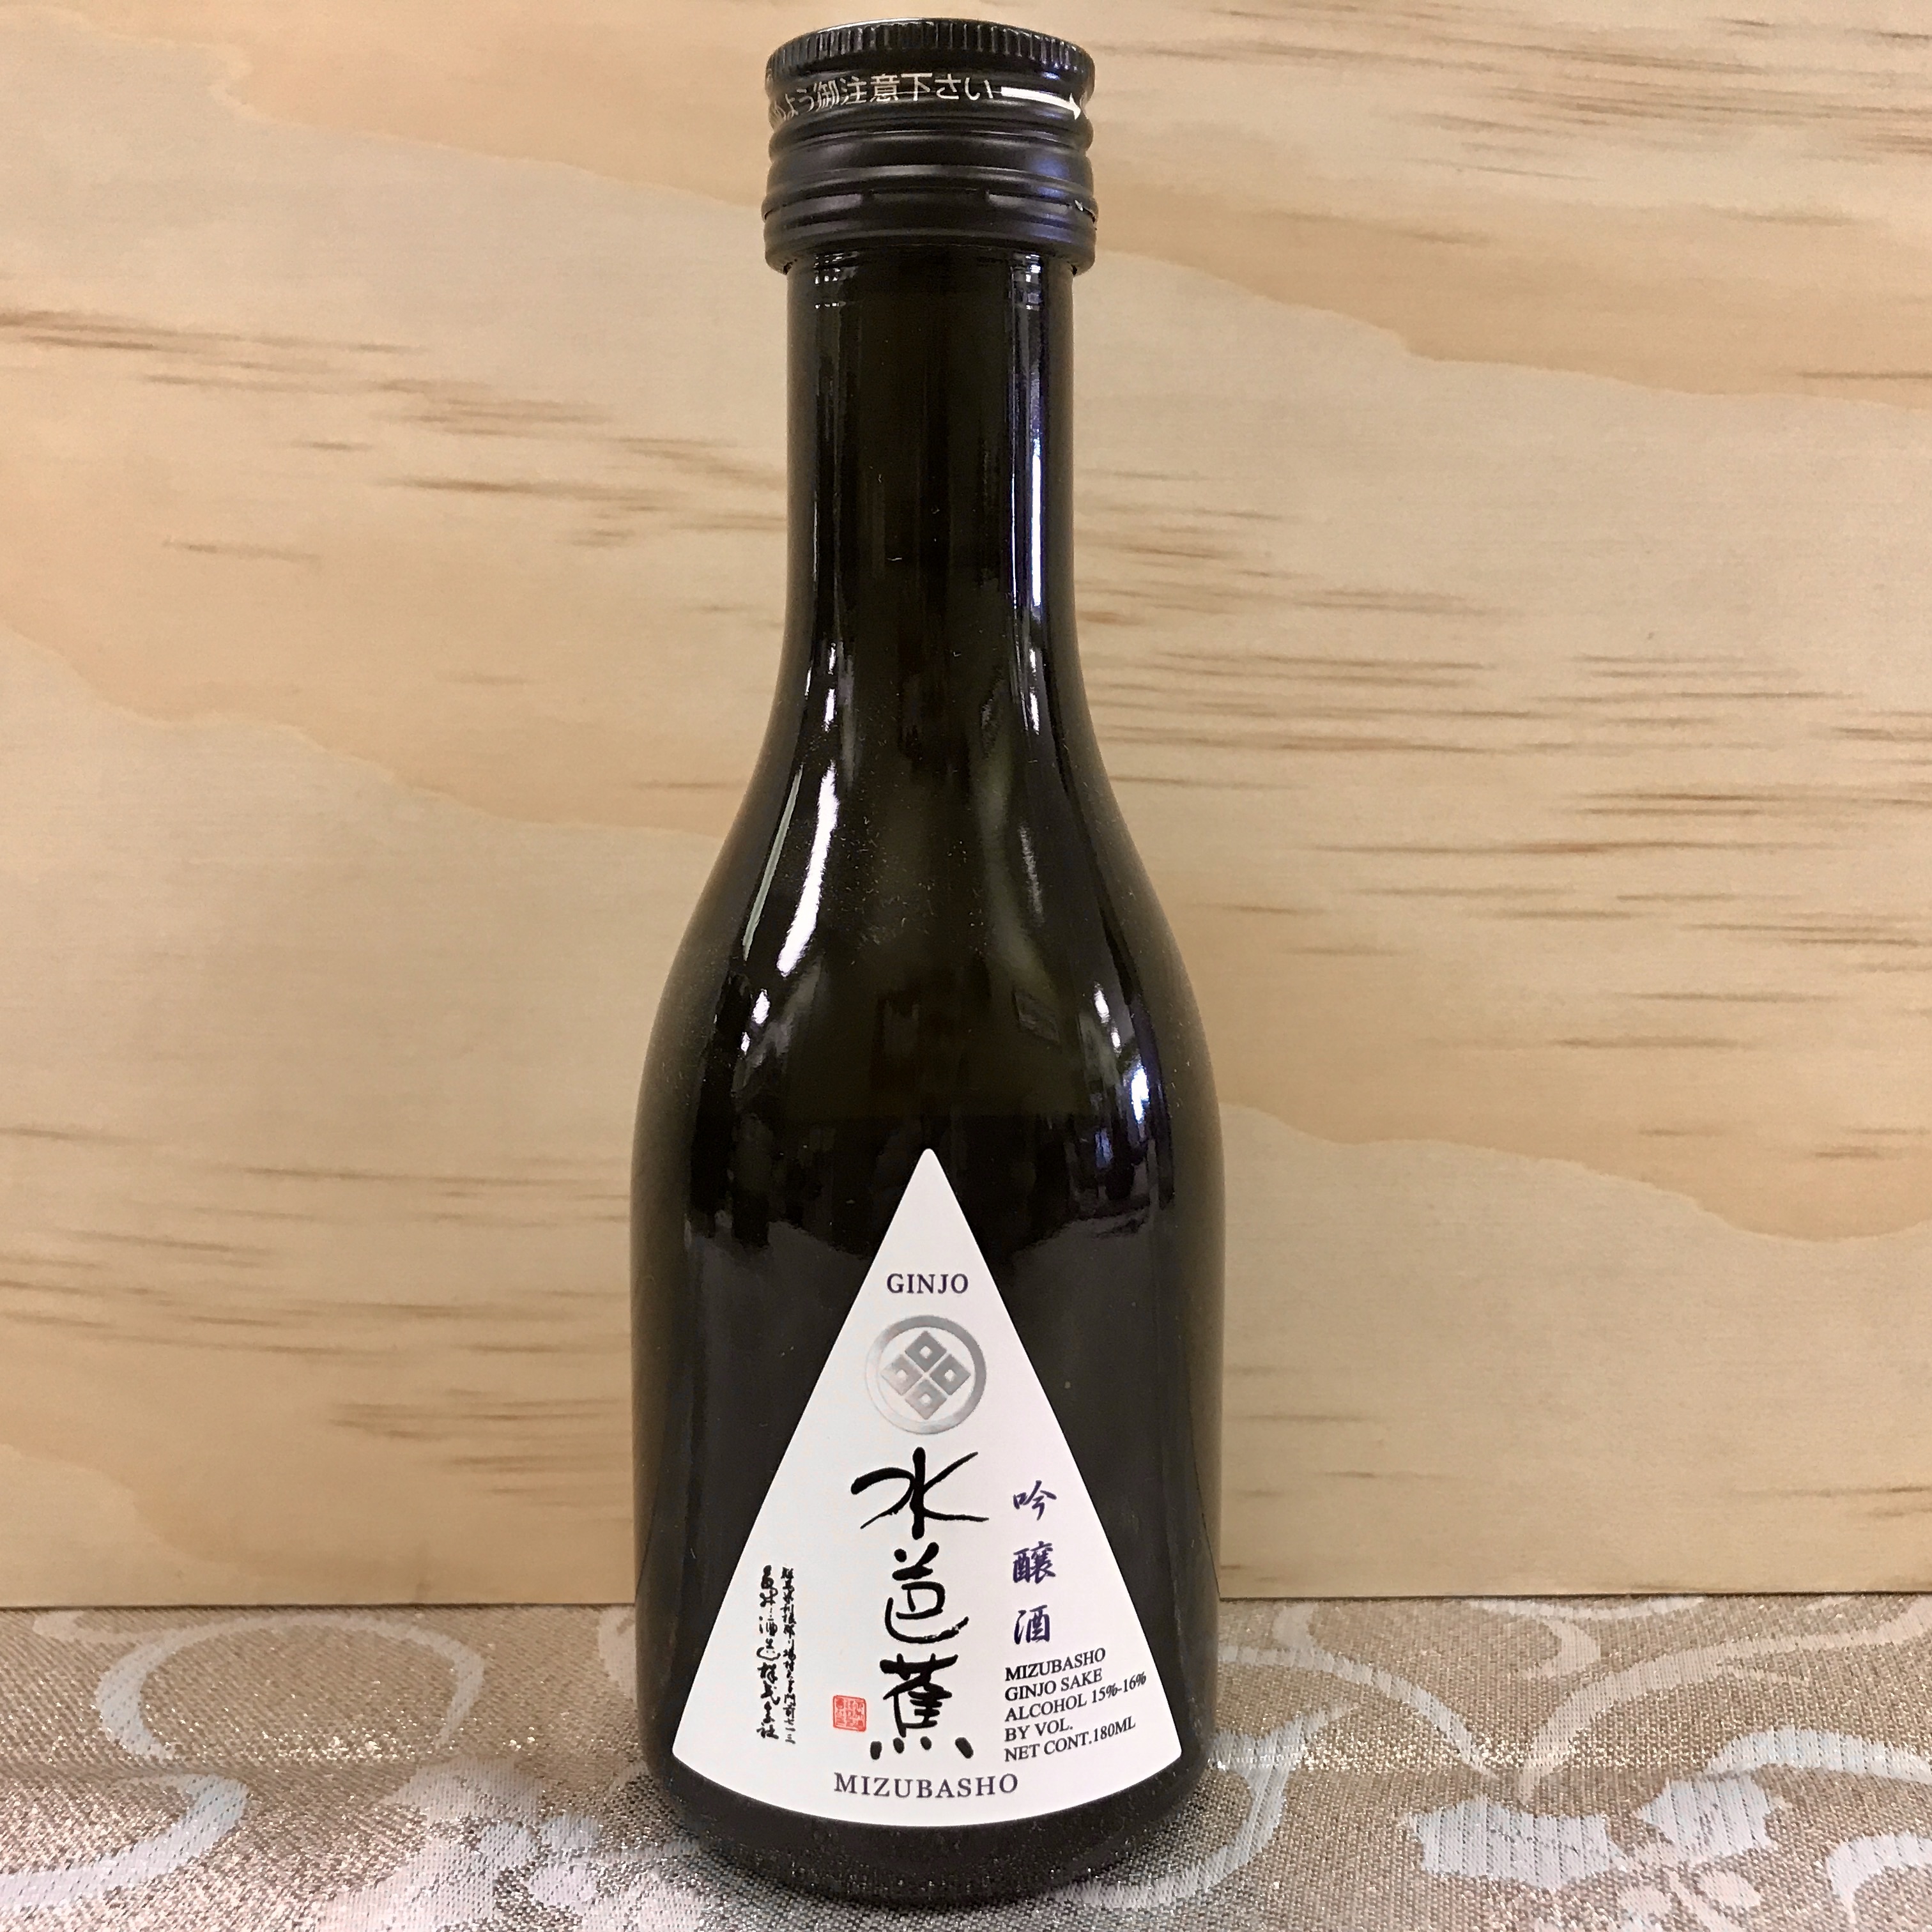 Mizubasho Ginjo Sake 180 ml bottle